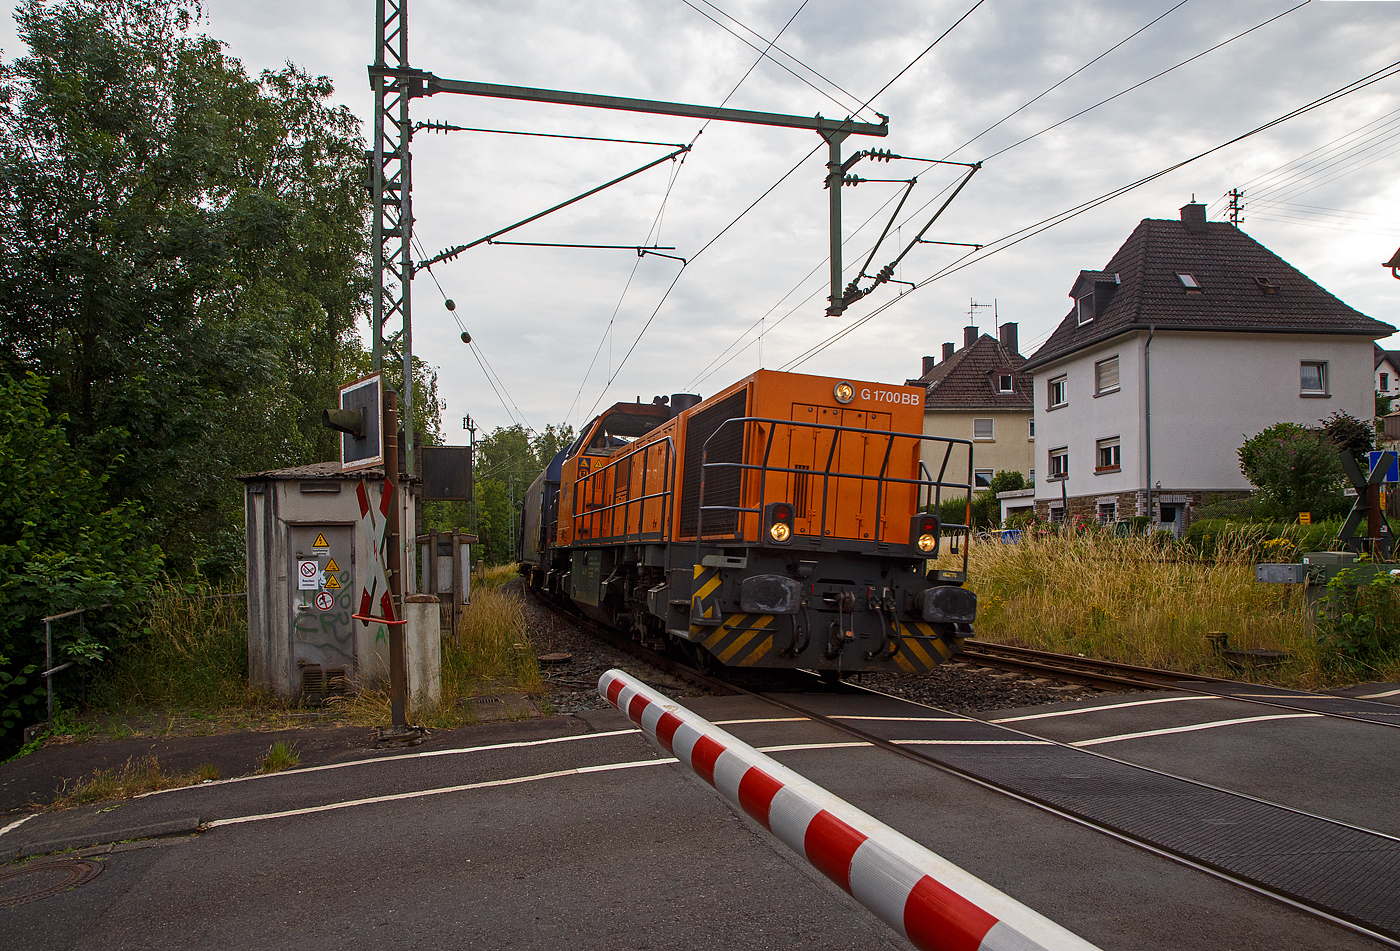 Endlich nach fast einem halben Jahr der Streckensperrung der Hellertalbahn zwischen Herdorf und Betzdorf wegen dem Felssturz, fahren nun (seit dem 12.06.) die Übergabezüge der KSW (ex FGE - Freien Grunder Eisenbahn) wieder auf der gewohnten (kürzesten) Route. 

Die KSW 46 bzw. 277 807-4 (92 80 1277 807-4 D-KSW), die Vossloh G 1700-2 BB, der KSW (Kreisbahn Siegen-Wittgenstein), fährt am 27.06.2023 mit ihrem Übergabezug vermutlich mit Höchstgeschwindigkeit durch Kirchen (Sieg), hier beim BÜ km 121,192 (Kirchen, Molzbergstraße). Diese Übergabezüge werden vom KSW Rangierbahnhof Herdorf (Betriebsstätte FGE -Freien Grunder Eisenbahn) via Betzdorf und Siegen zum Übergabebahnhof der DB AG dem Rbf Kreuztal geführt. 

Nochmals einen lieben Gruß an den netten Lokführer zurück